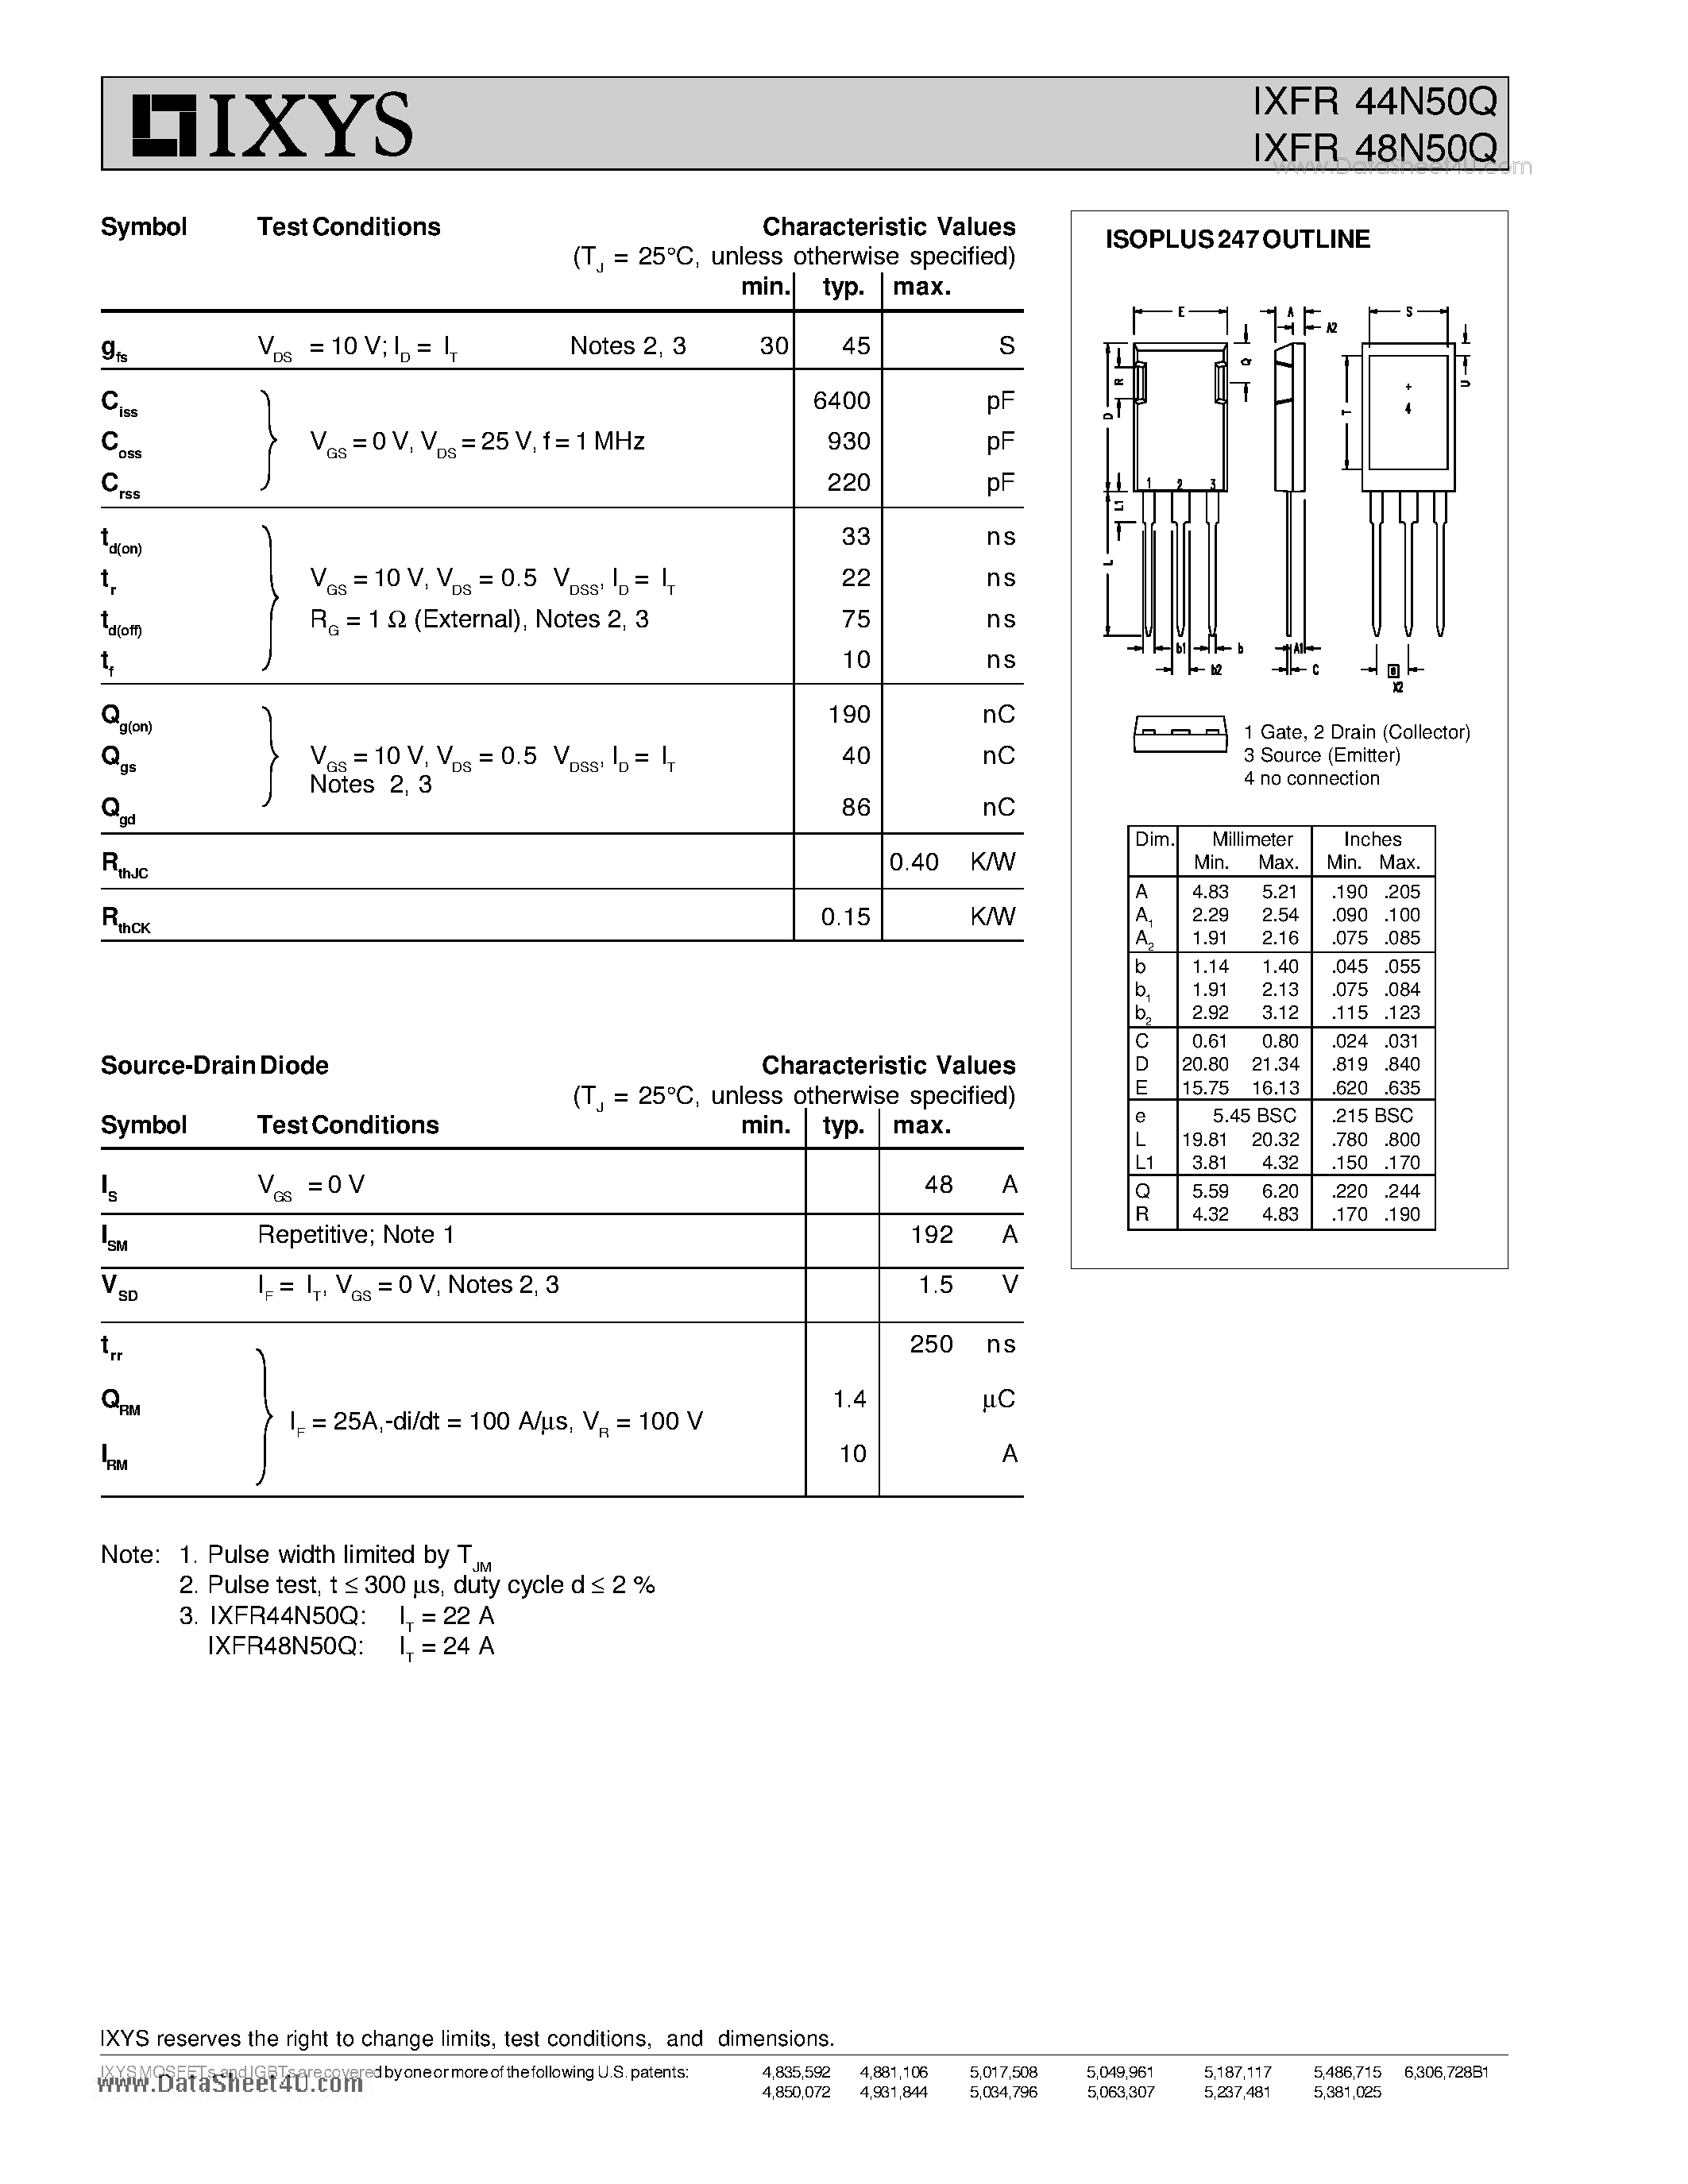 Даташит IXFR44N50Q - HiPerFET Power MOSFETs ISOPLUS247 Q-Class страница 2